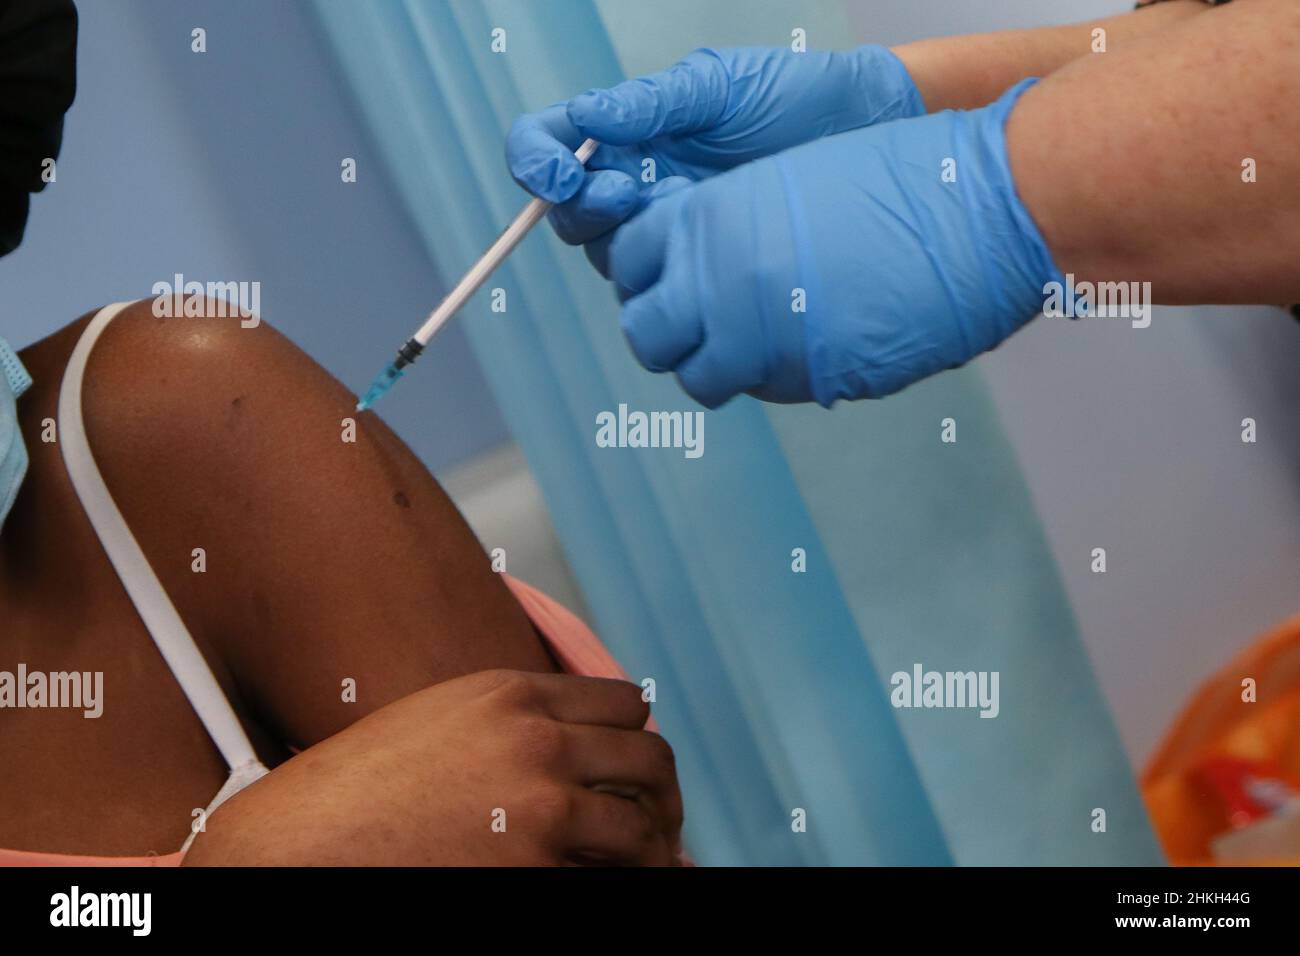 Una vacunadora del NHS administra el booster jab Covid-19 de Pfizer a la mujer, en un centro de vacunación. Foto de stock